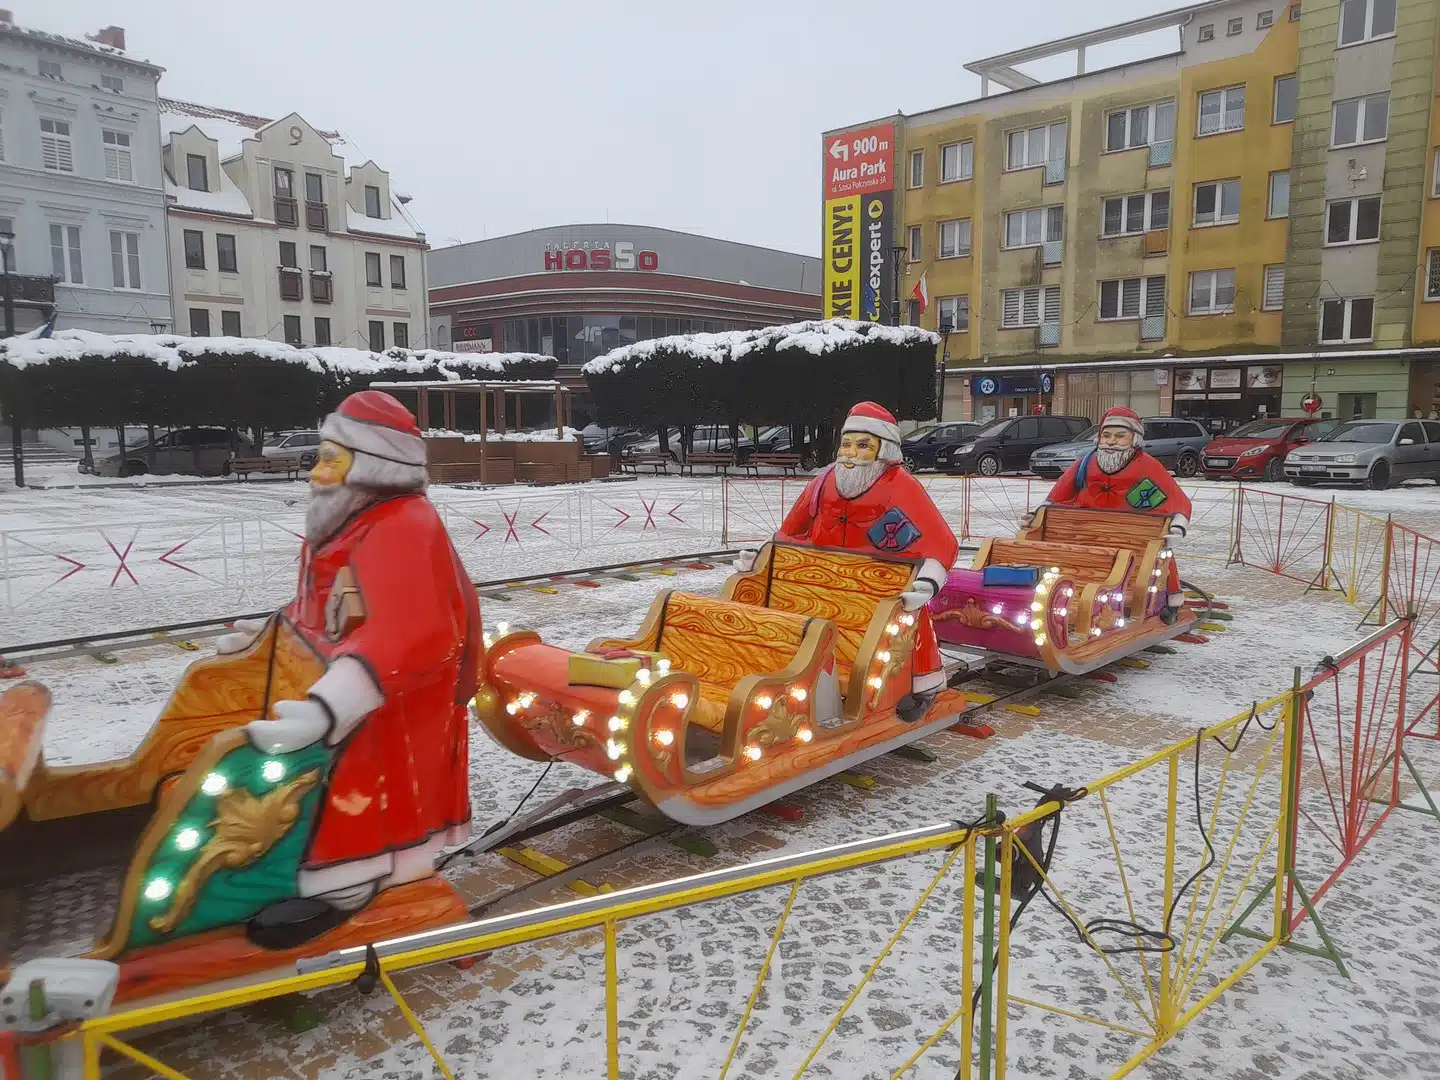 Zimowa Kolejka z Mikołajami w Megaland - elektryczna kolejka przemierzająca śnieżny krajobraz, z Mikołajami niosącymi duch świąt do każdego miasta.